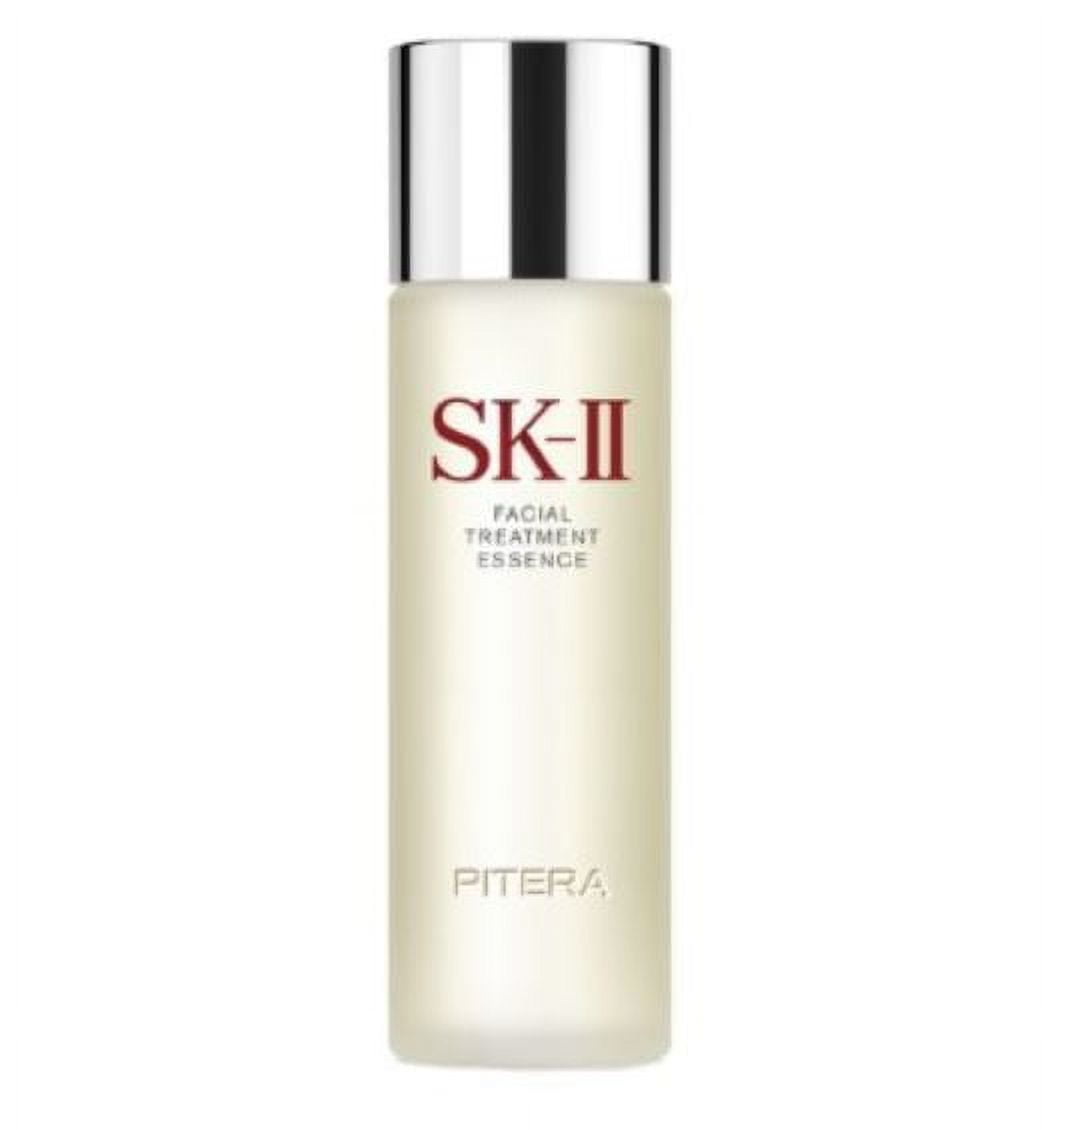 SK-II Facial Treatment Essence, 7.7 oz., Skincare Skin & Facial Treatments